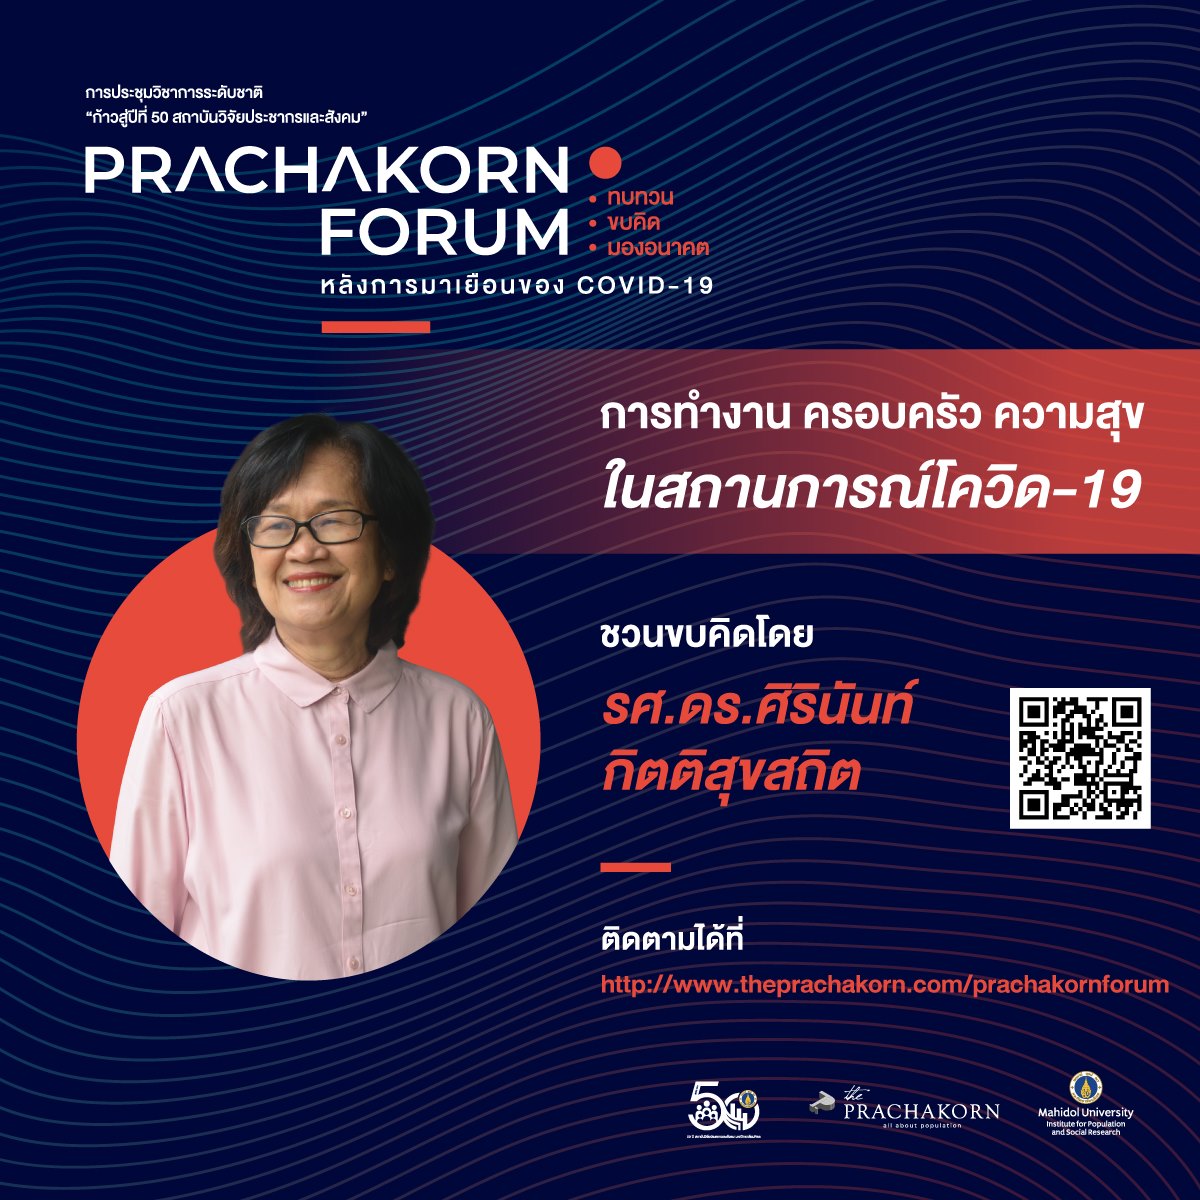 Prachakorn Forum EP.4 | การทำงาน ครอบครัว ความสุข ในสถานการณ์โควิด-19